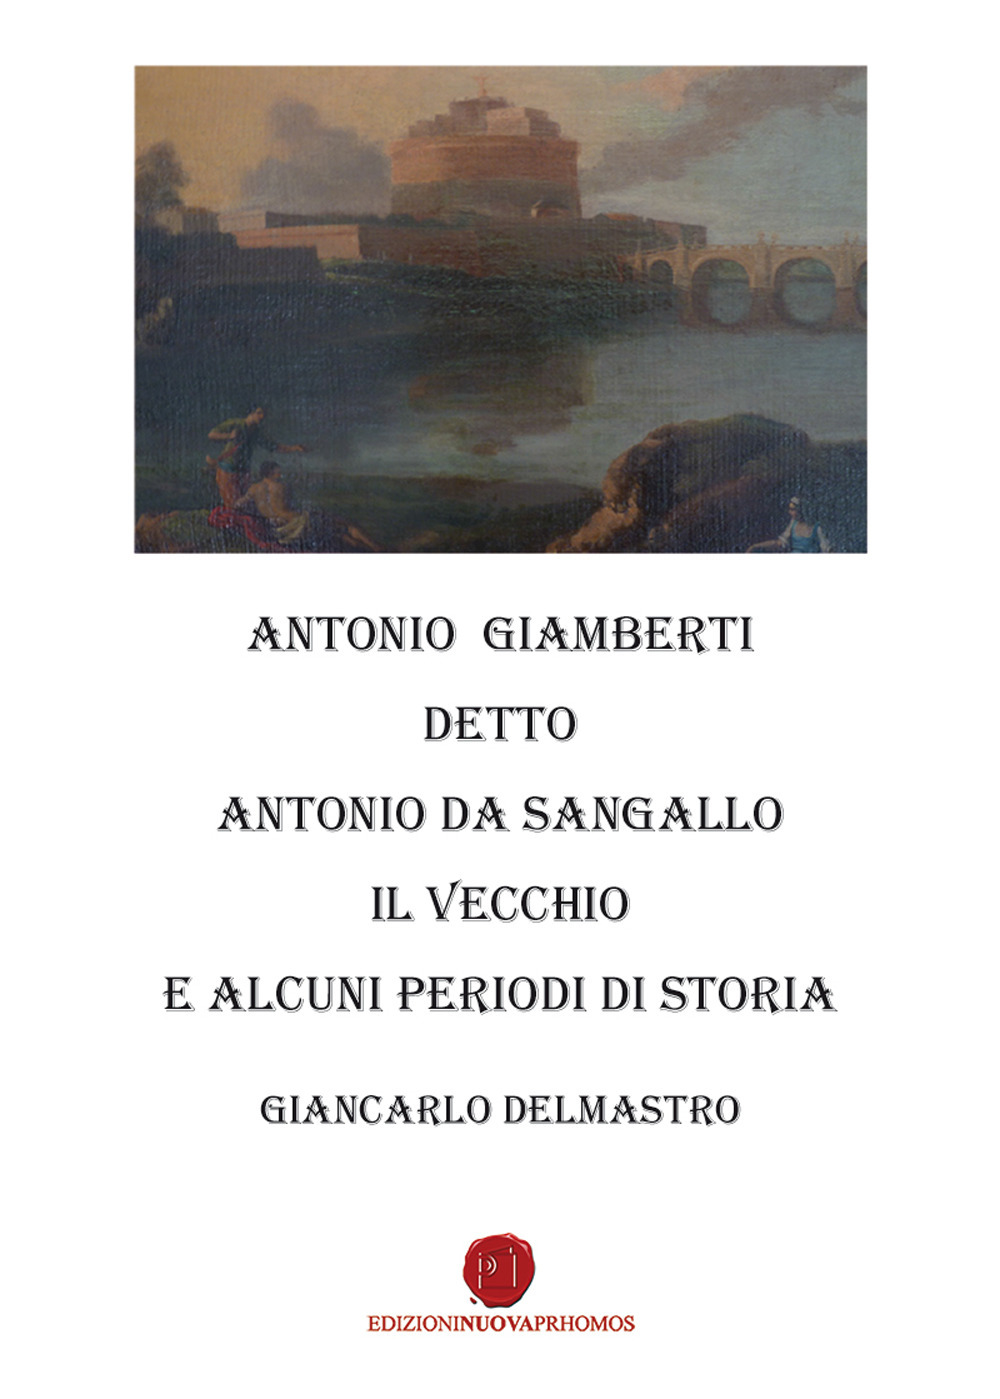 Image of Antonio Giamberti detto Antonio da Sangallo Il Vecchio e diversi periodi di storia